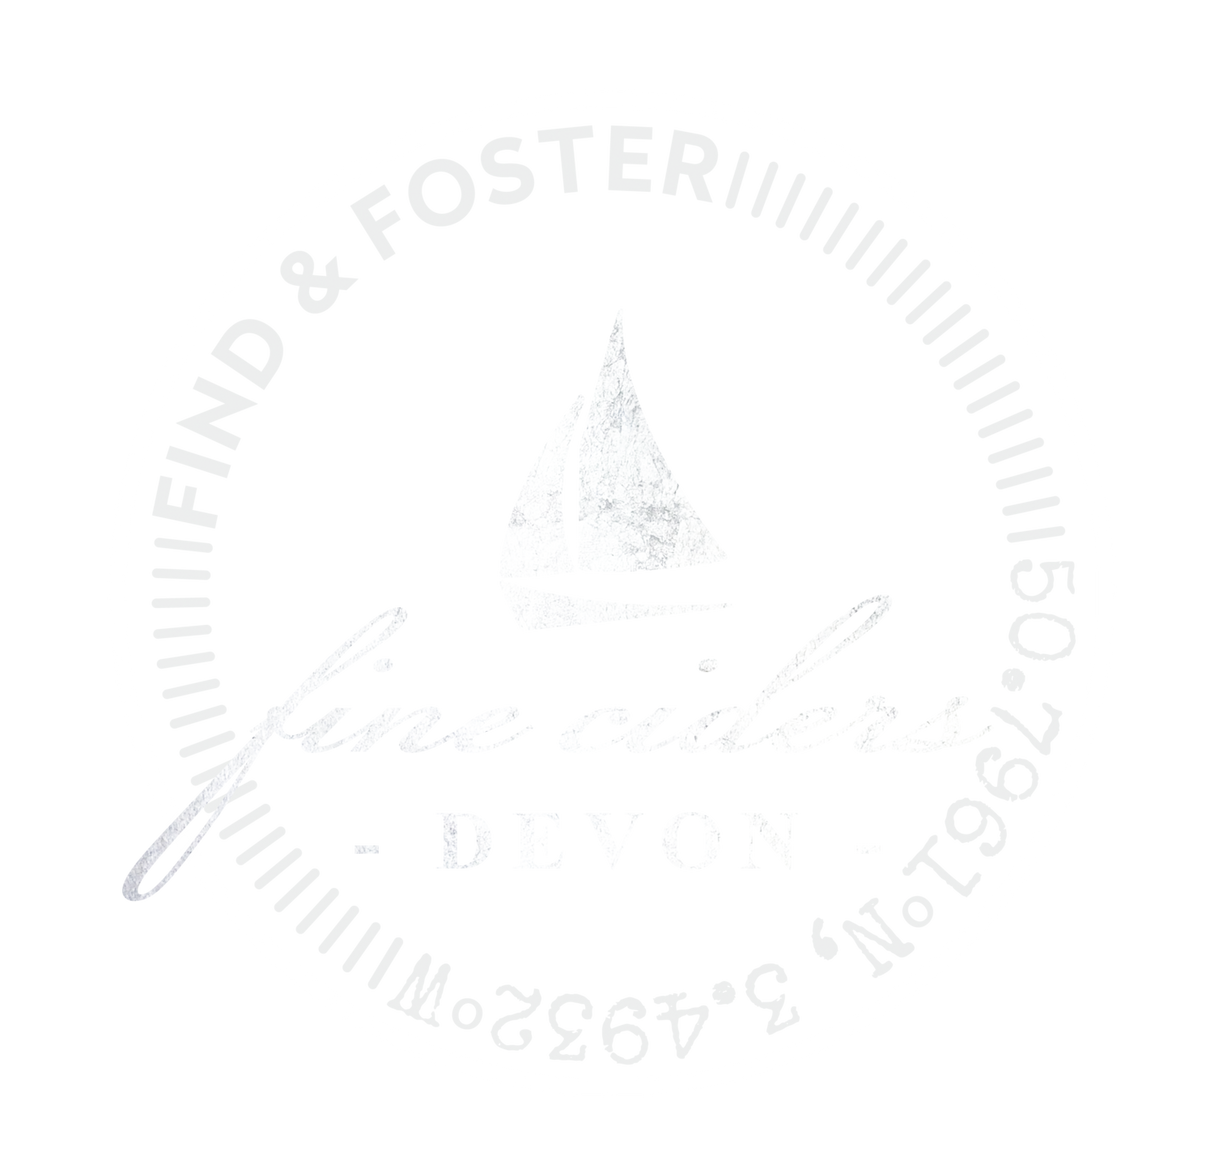 Find & Foster Fine Cider Methode Traditionelle 2016 8.1% (750ml)-Hop Burns & Black